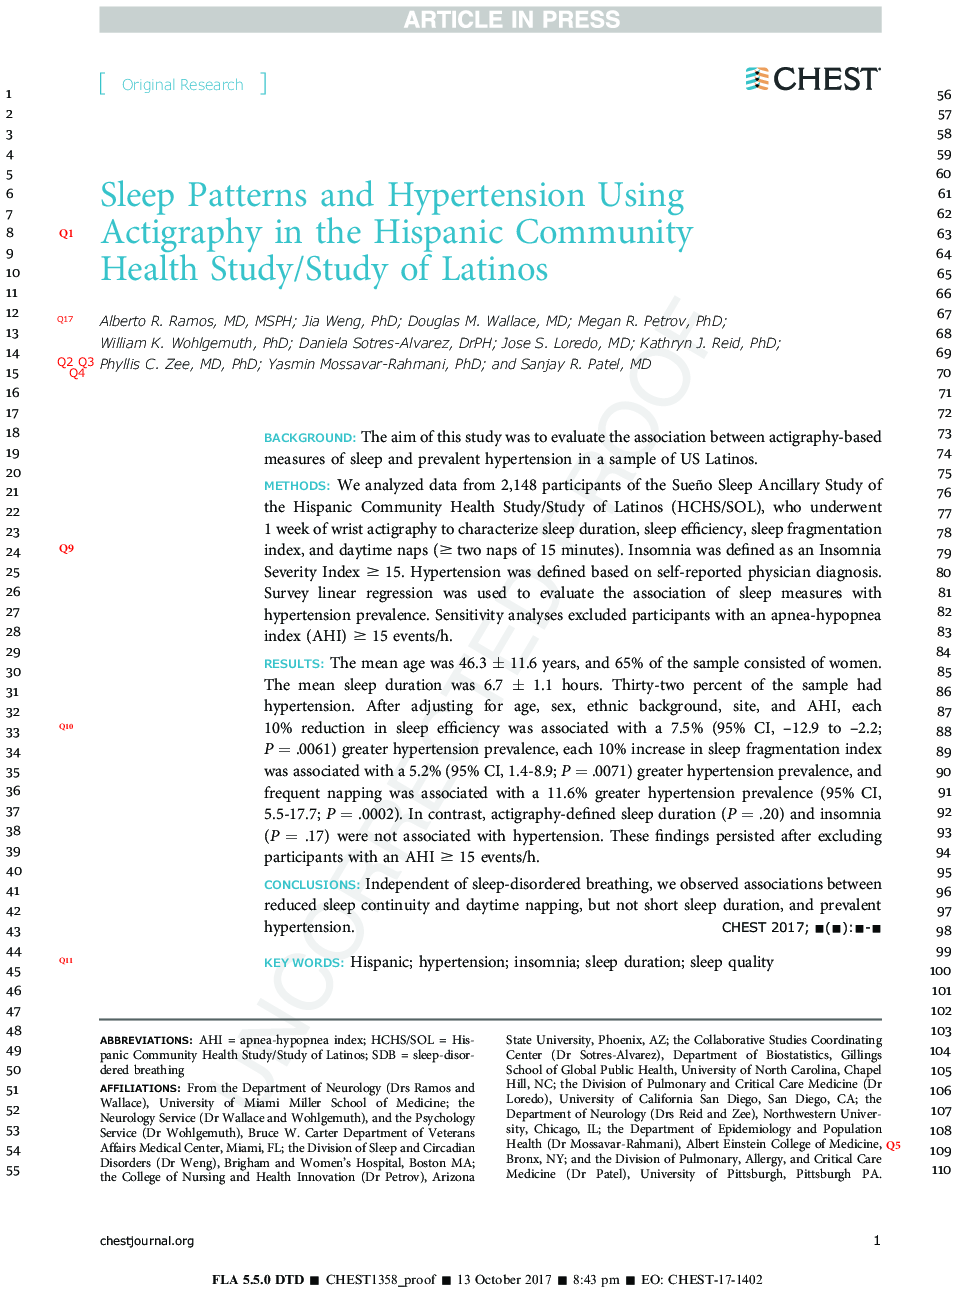 الگوهای خواب و فشار خون بالا با استفاده از ایزوگرافی در جامعه سلامت جامعه اسپانیایی / مطالعه لاتین 